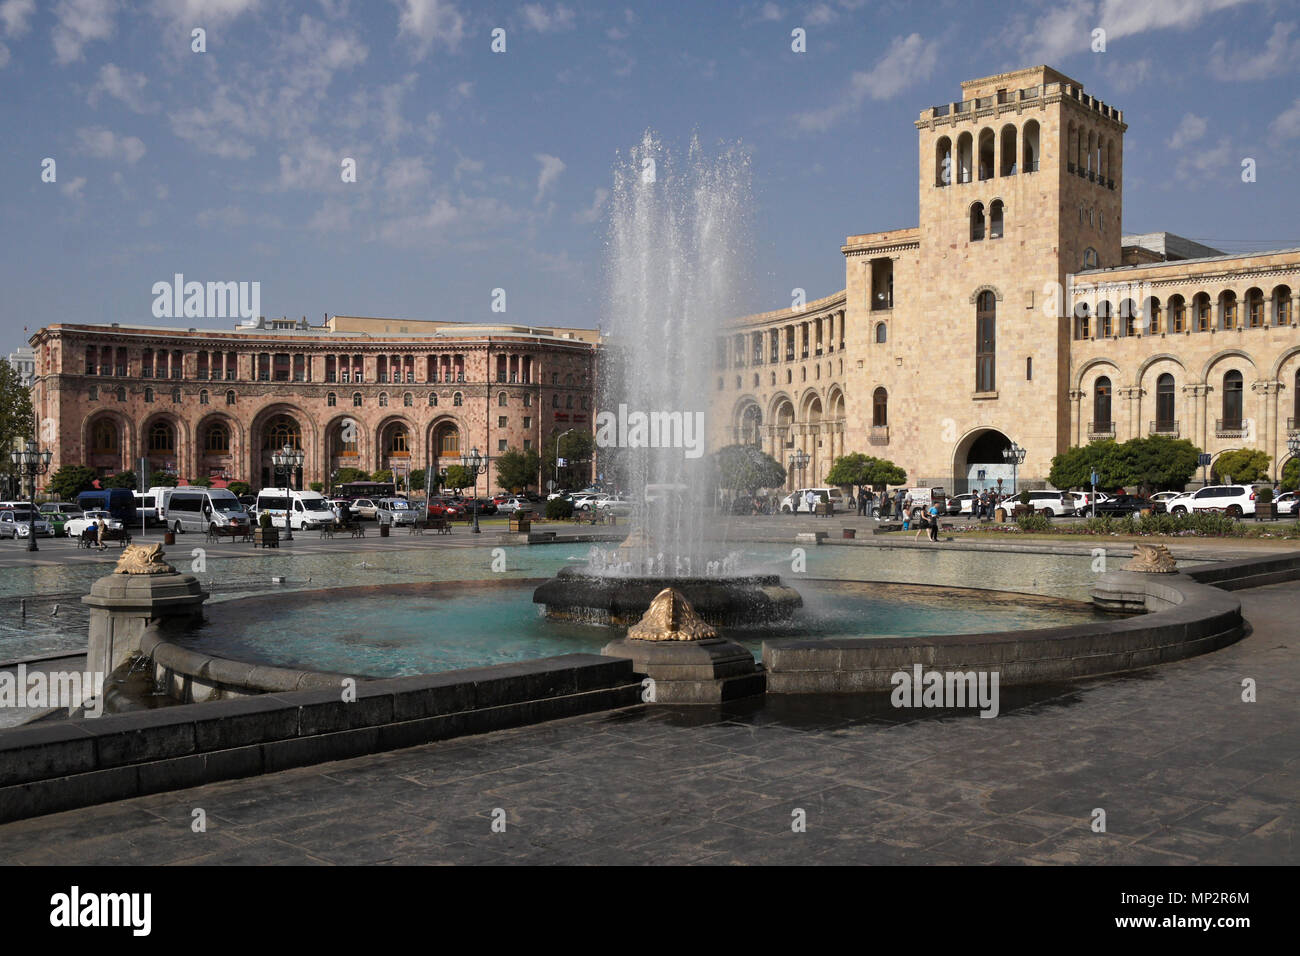 Republic Square (Hanrapetutyan Hraparak, formerly Lenin Square), Yerevan, Armenia Stock Photo